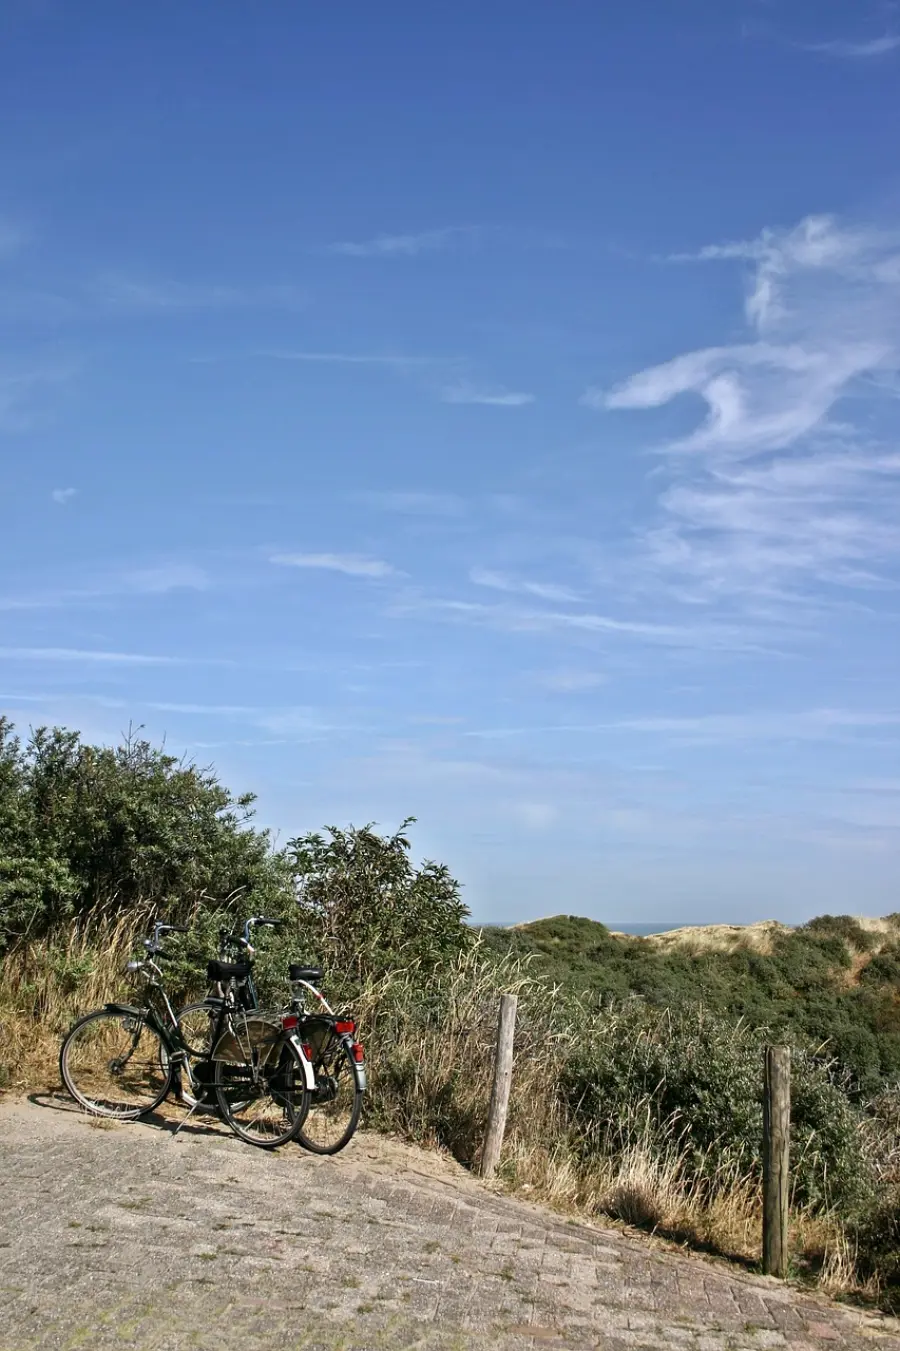 Dva bicikla parkirana na stazi s pješčanim dinama i zelenim grmljem u pozadini pod vedrim plavim nebom, prikaz biti biciklističke avanture na Murteru